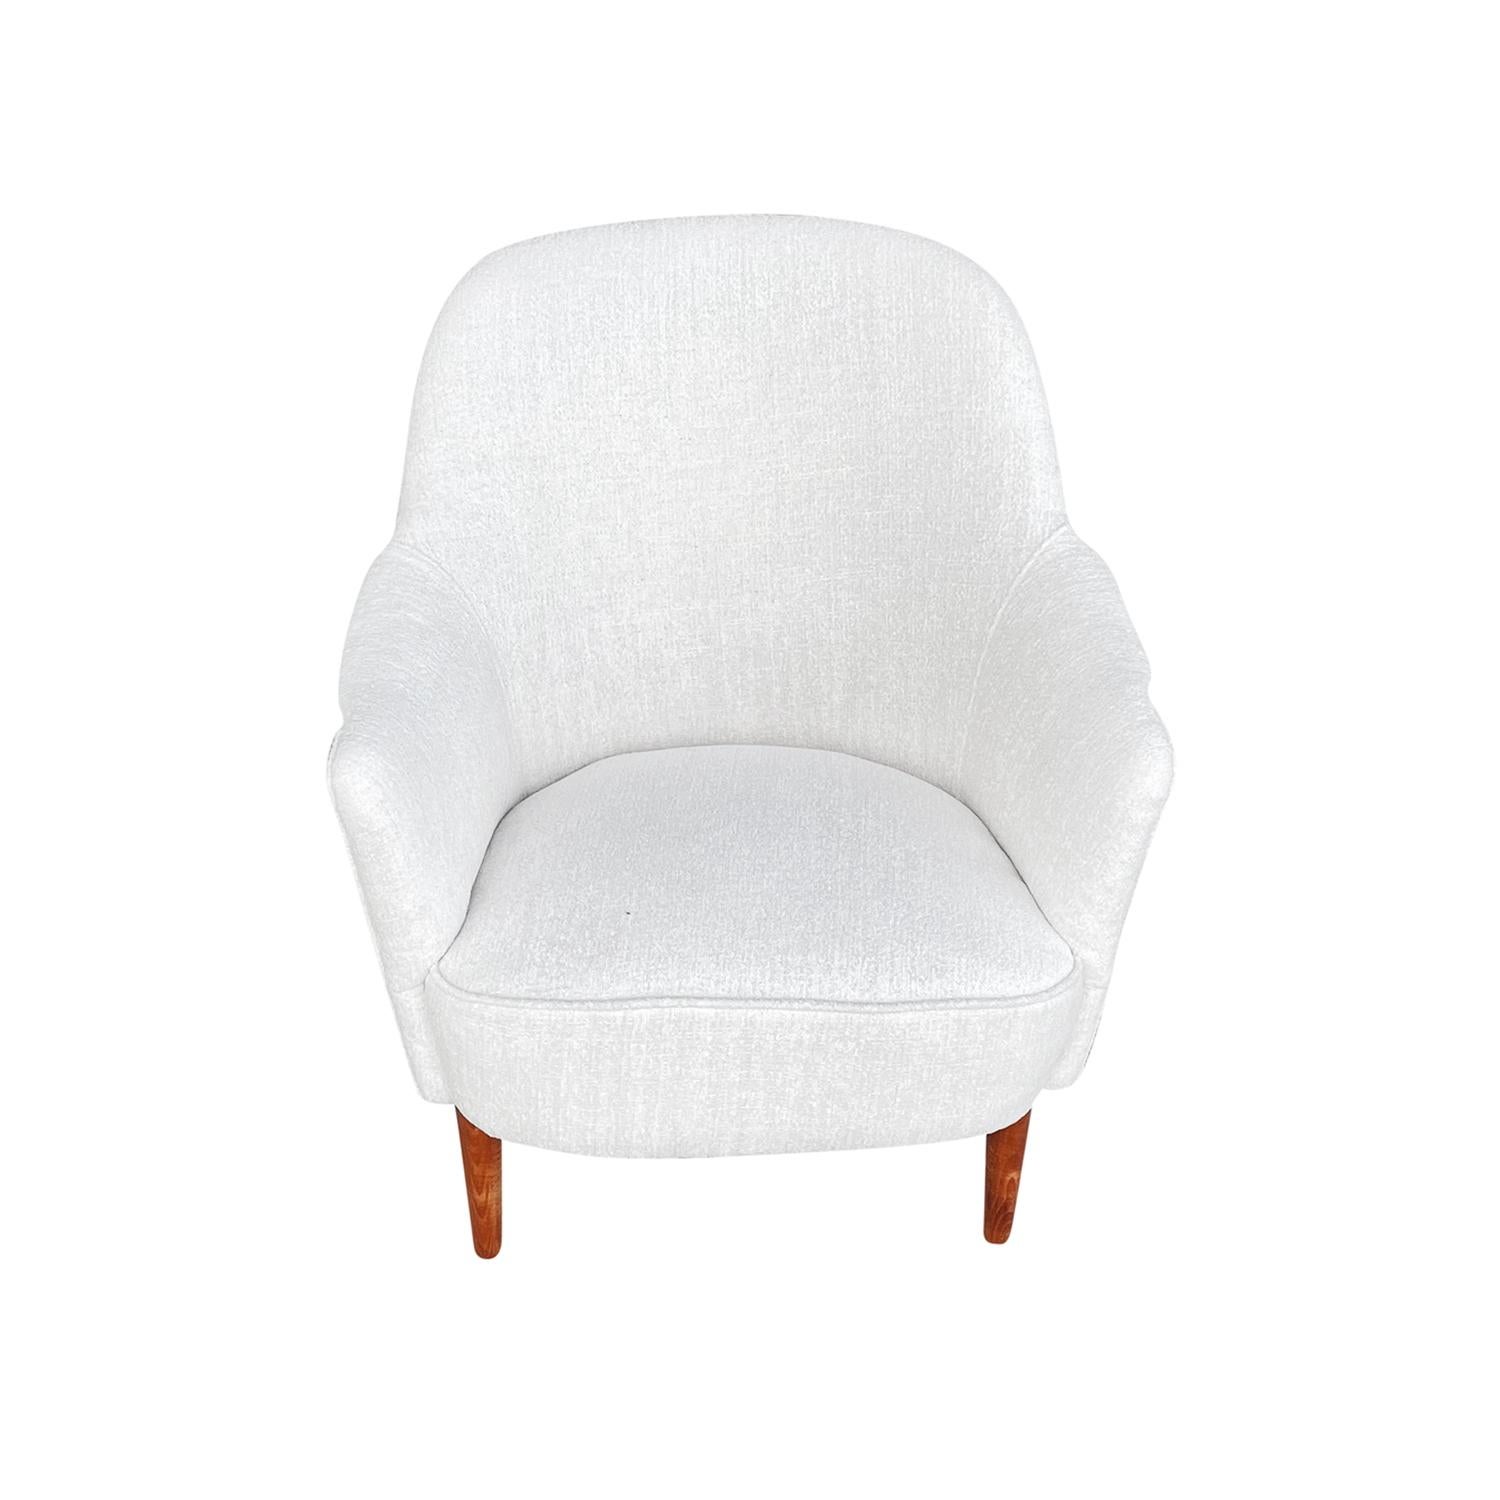 Eine kleine, Vintage Mid-Century Modern Schwedisch Sample Sessel, entworfen von Carl Malmsten in gutem Zustand. Der skandinavische Sessel steht auf vier leicht geschwungenen Birkenholzfüßen. Neu gepolstert mit weißem Baumwollstoff. Alters- und